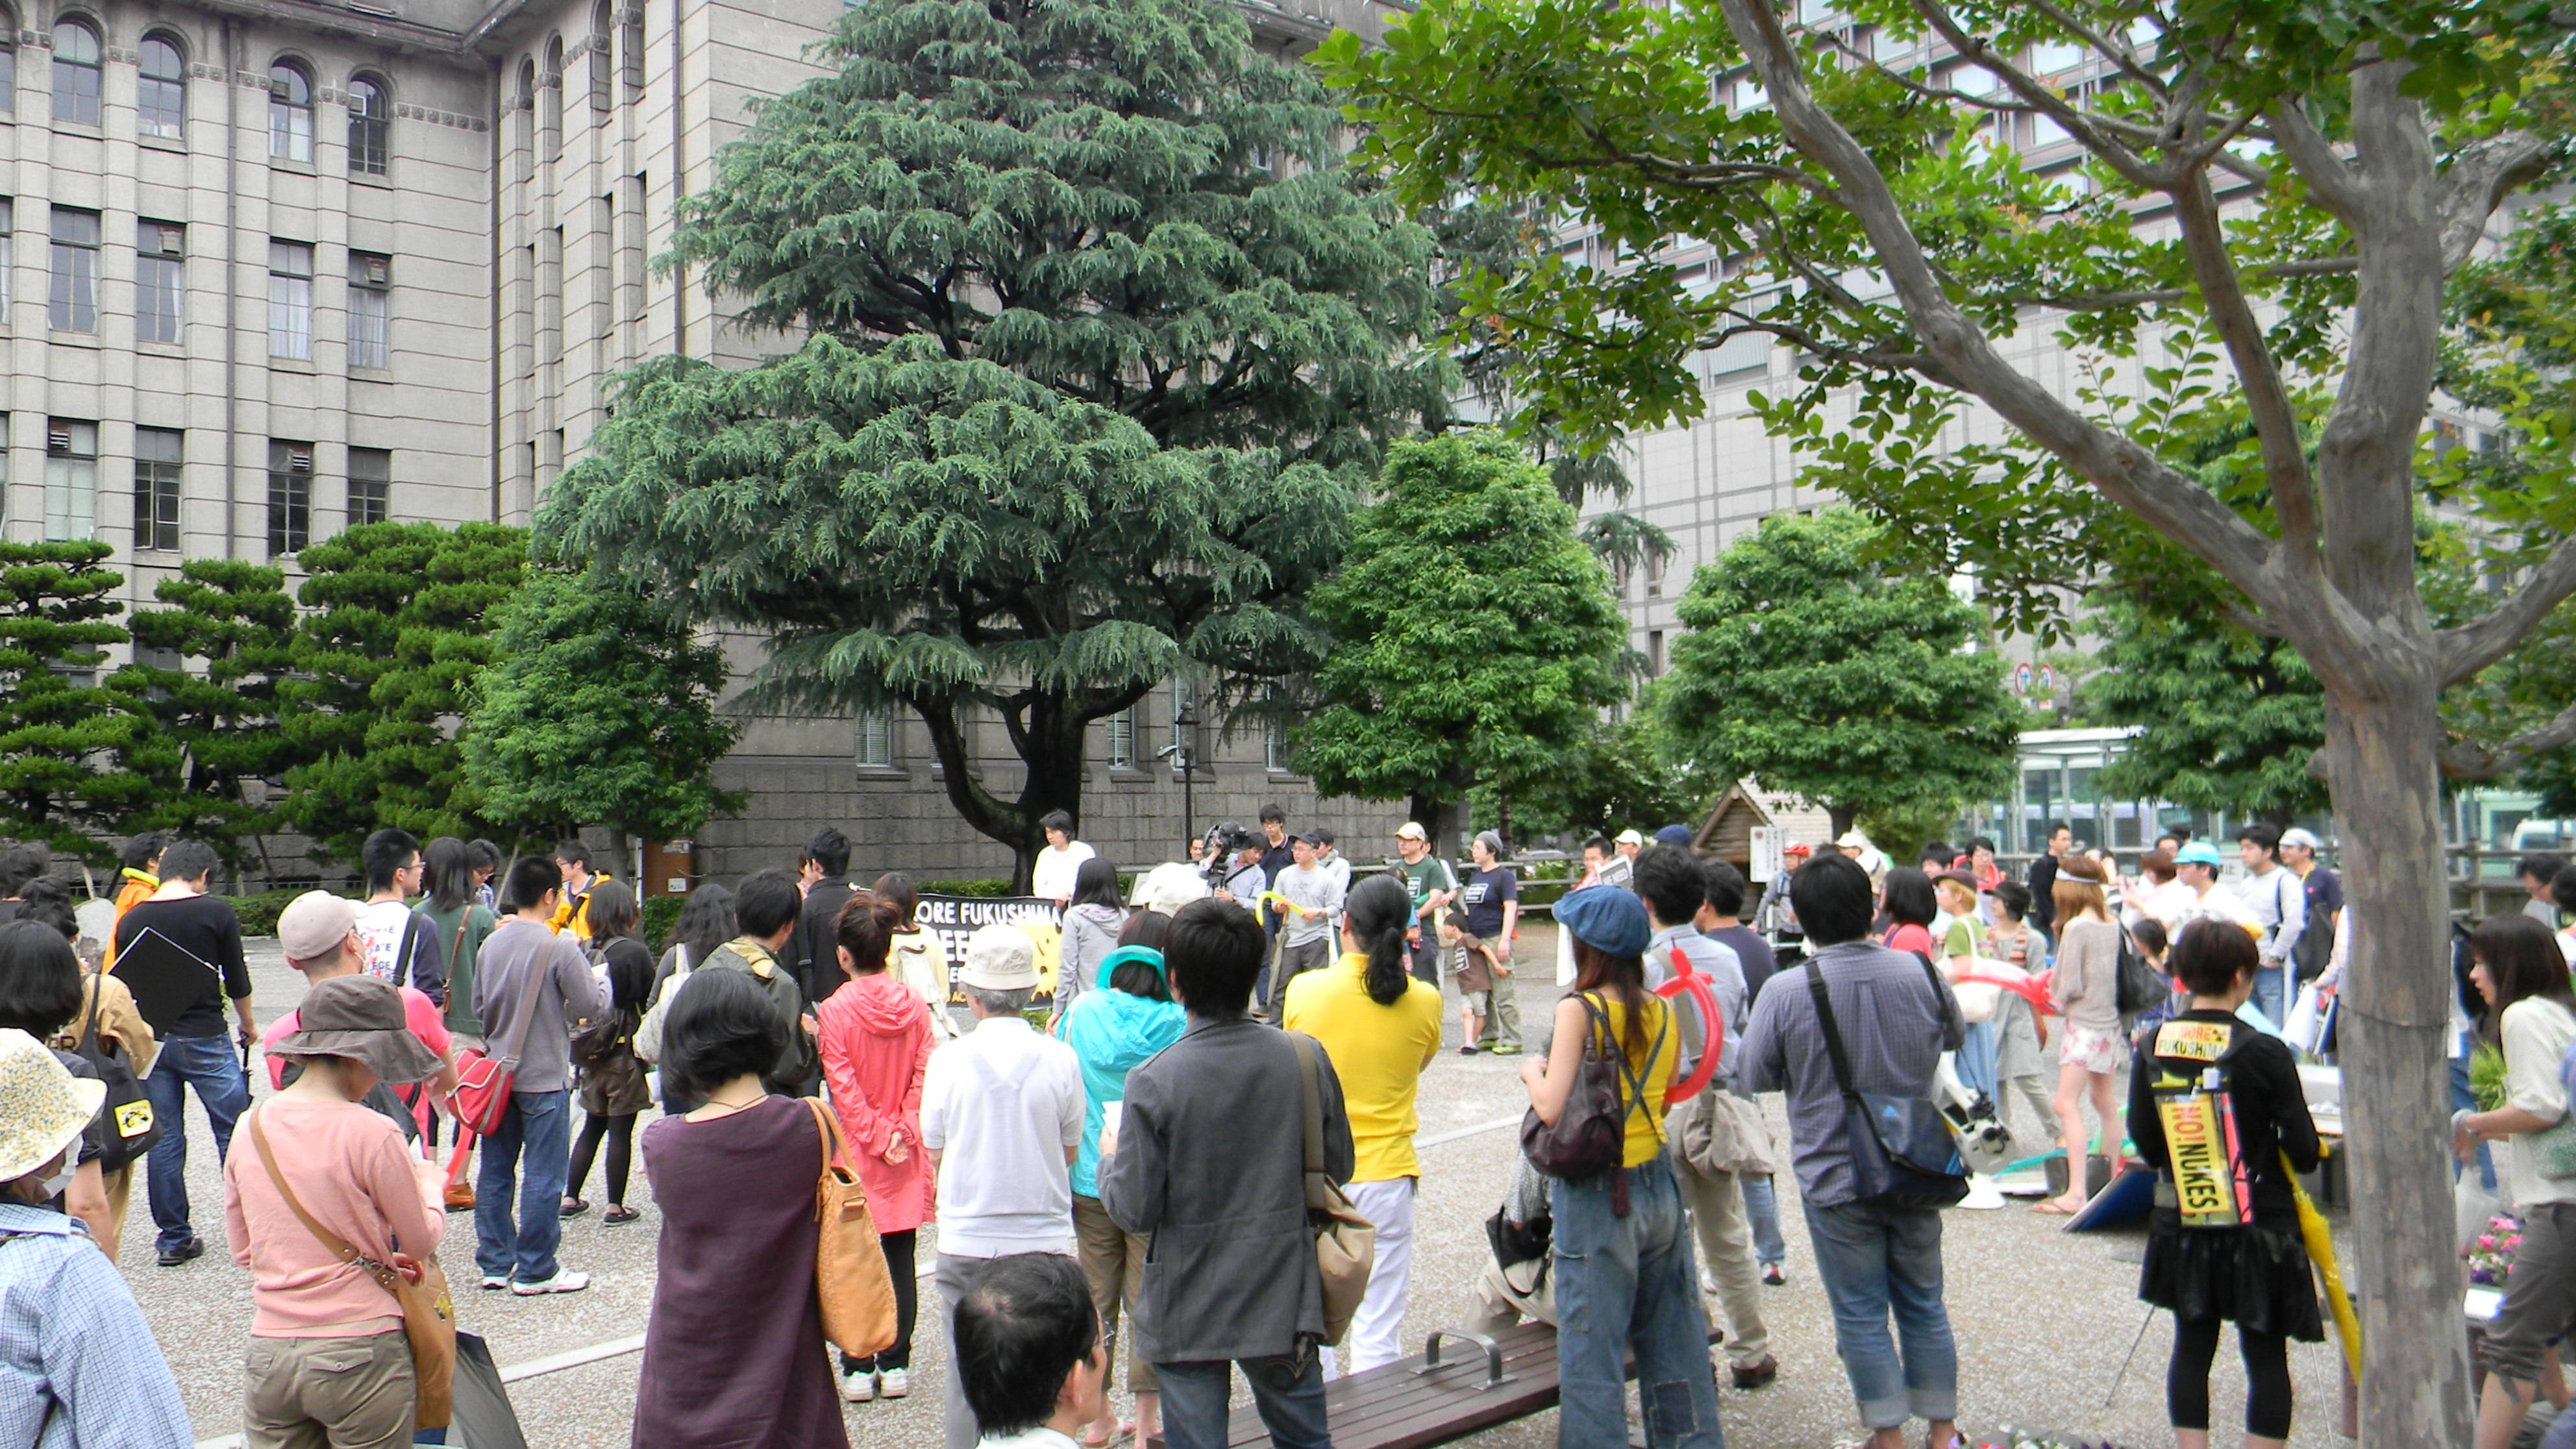 Addio al nucleare @ Kyoto 11 giugno 2011  davanti al municipio: cominciano ad arrivare i partecipanti al corteo